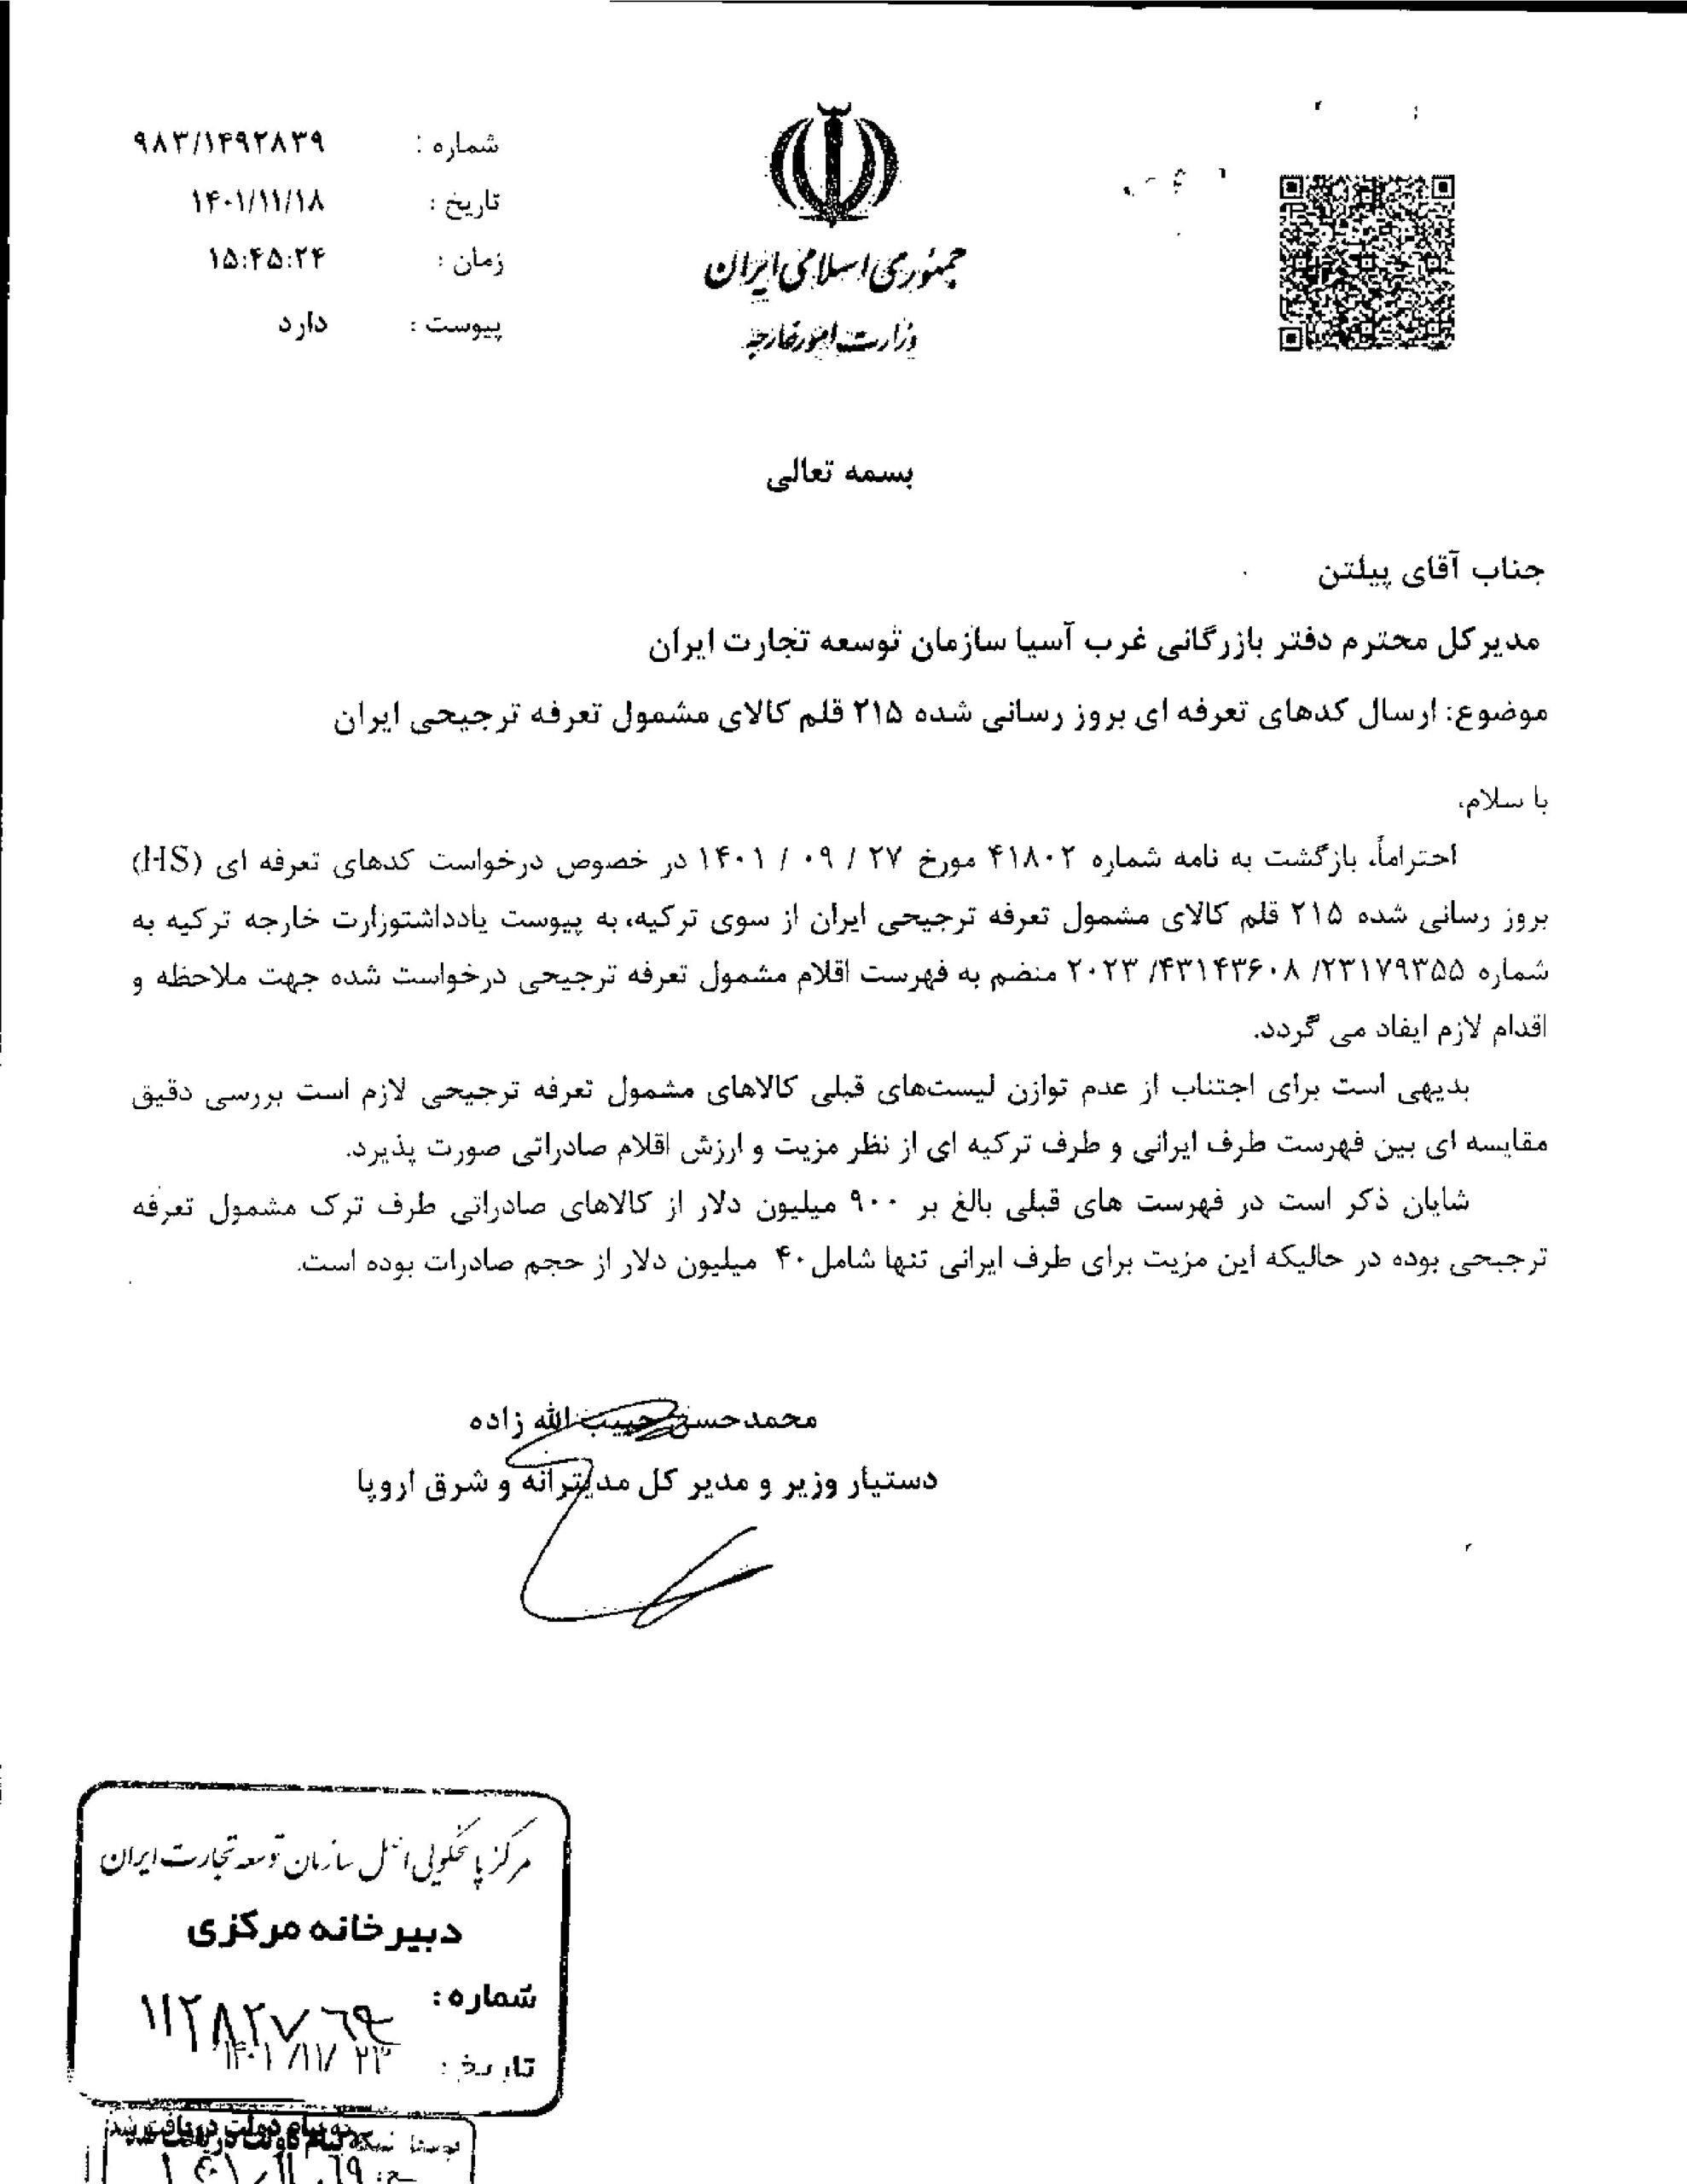 فهرست 215 قلم کالای ایرانی مشمول تعرفه ترجیحی از سوی ترکیه